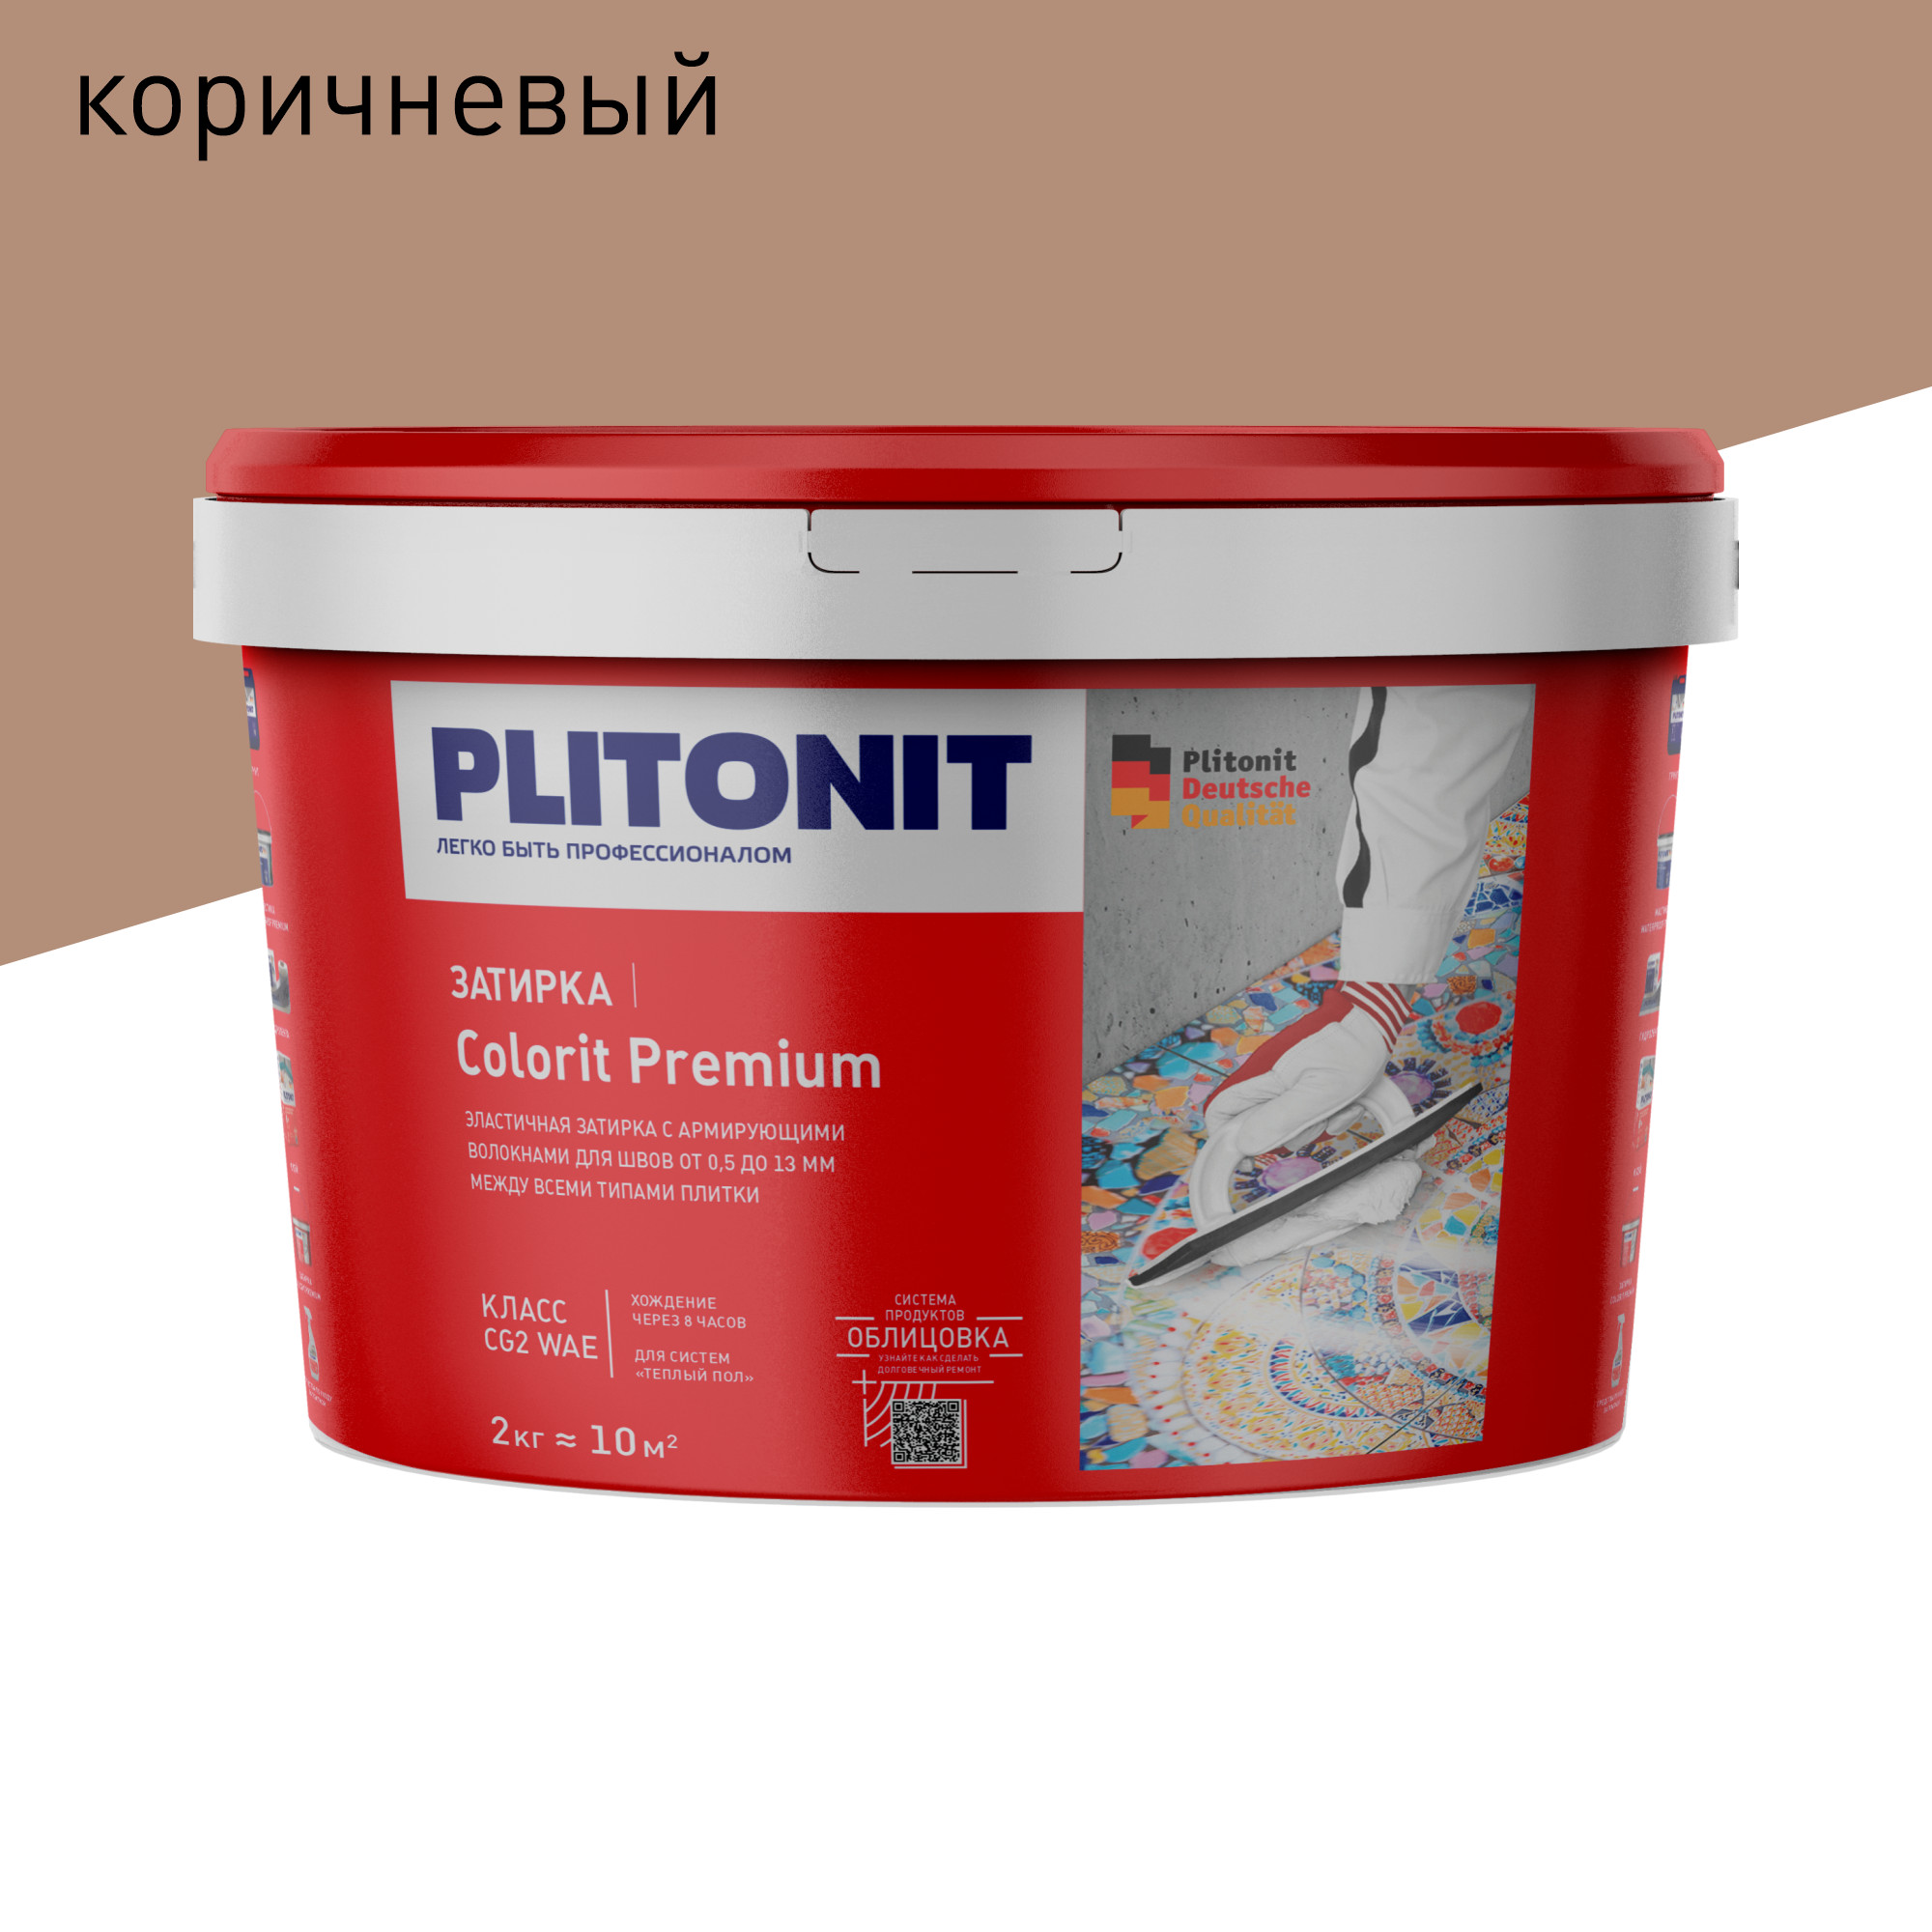 Затирка PLITONIT Colorit Premium коричневая 2 кг затирка для швов плитки plitonit